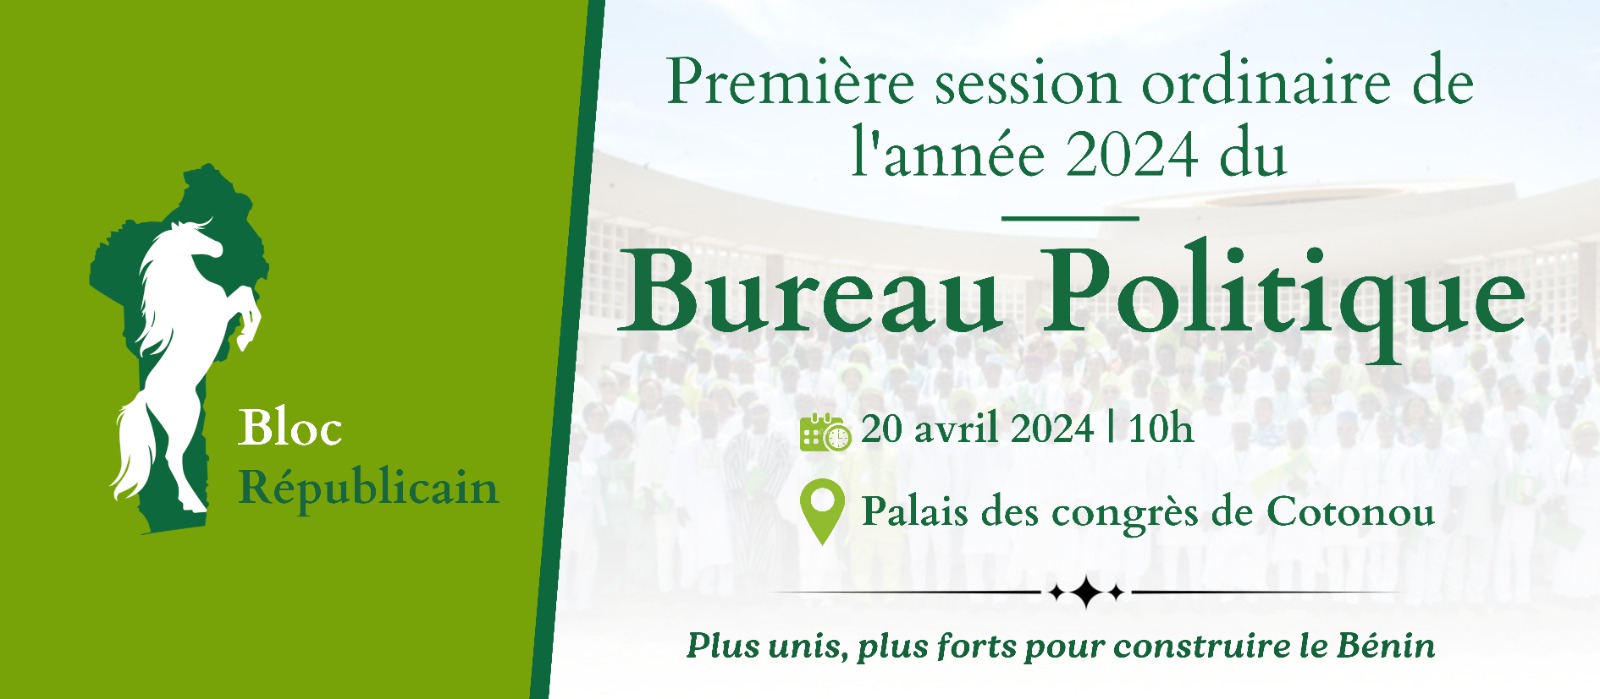 PREMIÈRE SESSION ORDINAIRE DE 2024 DU BUREAU POLITIQUE DU BLOC REPUBLICAIN: COMMUNIQUE